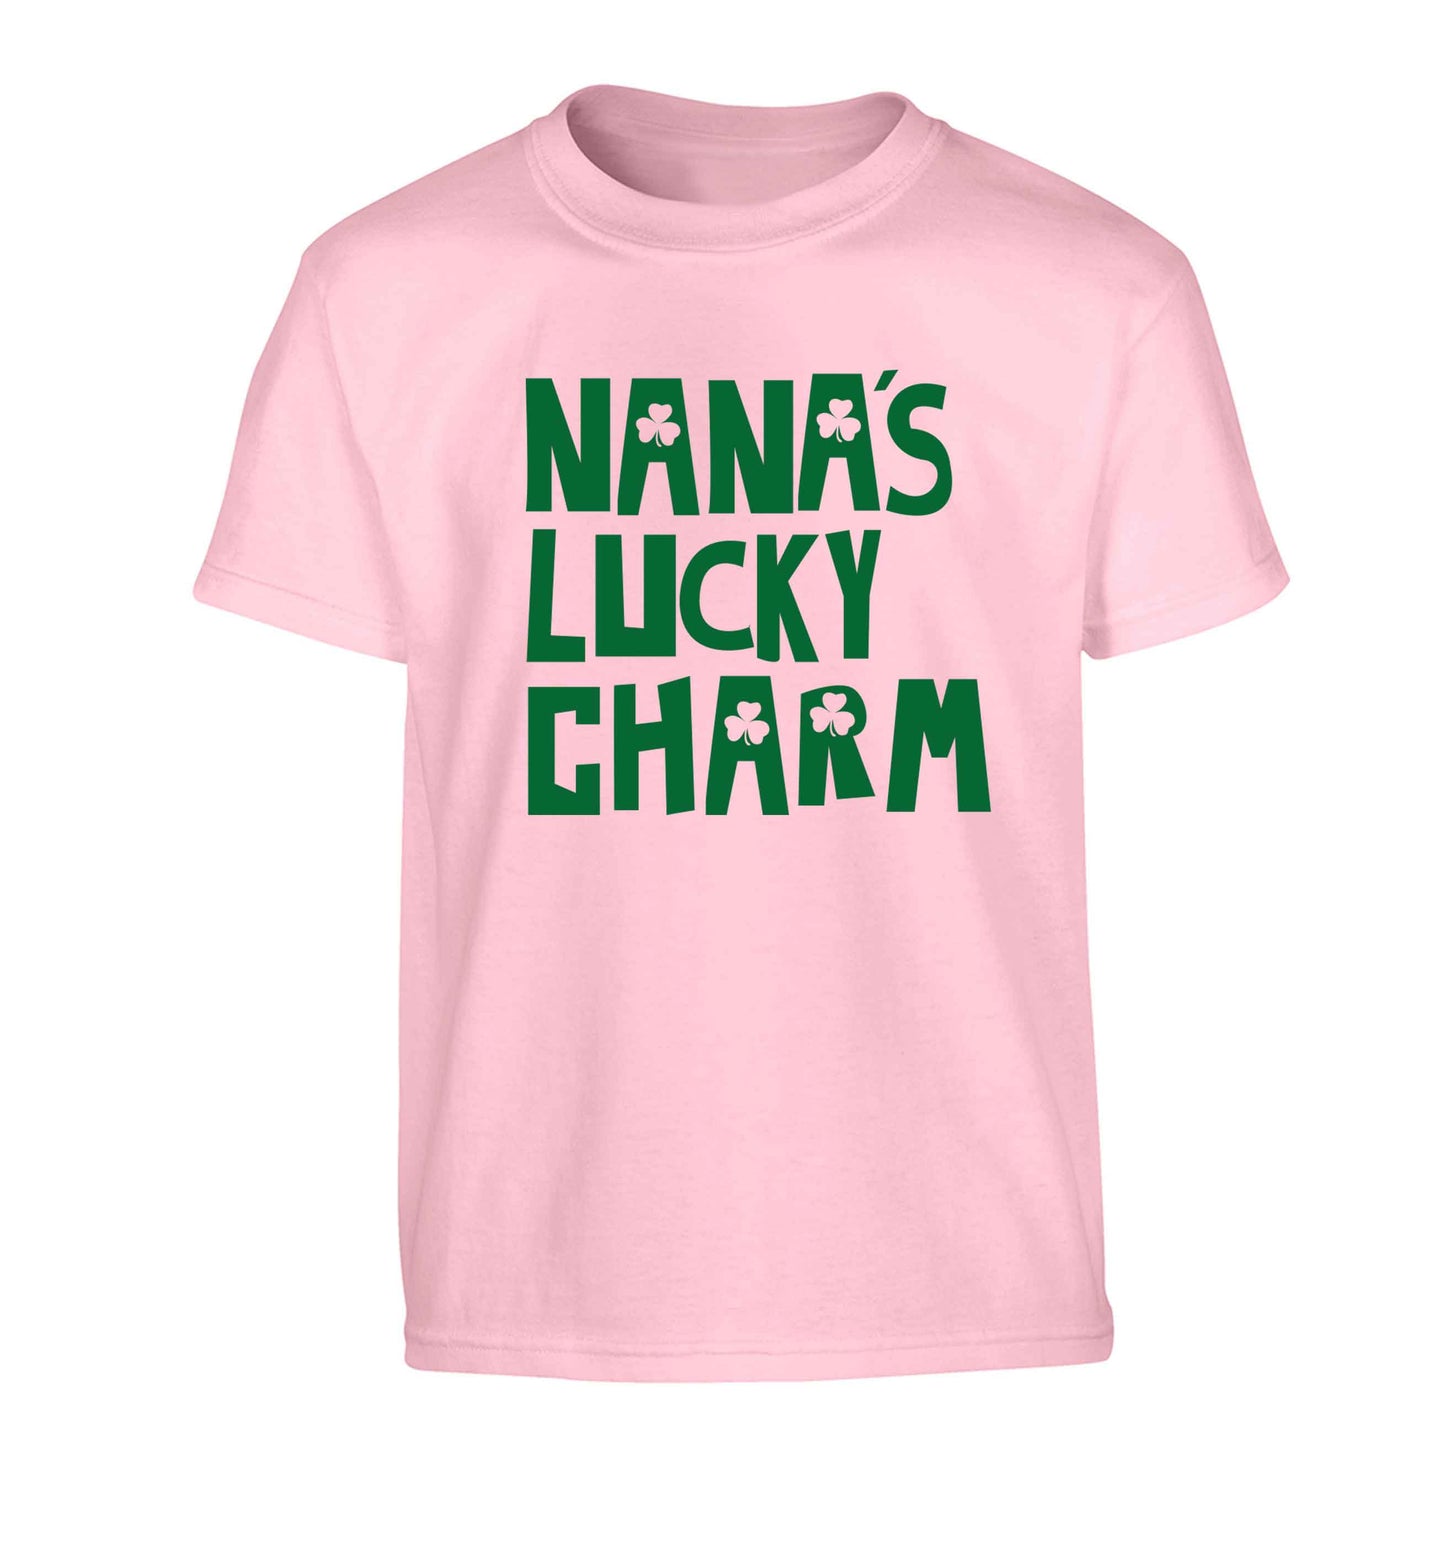 Nana's lucky charm Children's light pink Tshirt 12-13 Years